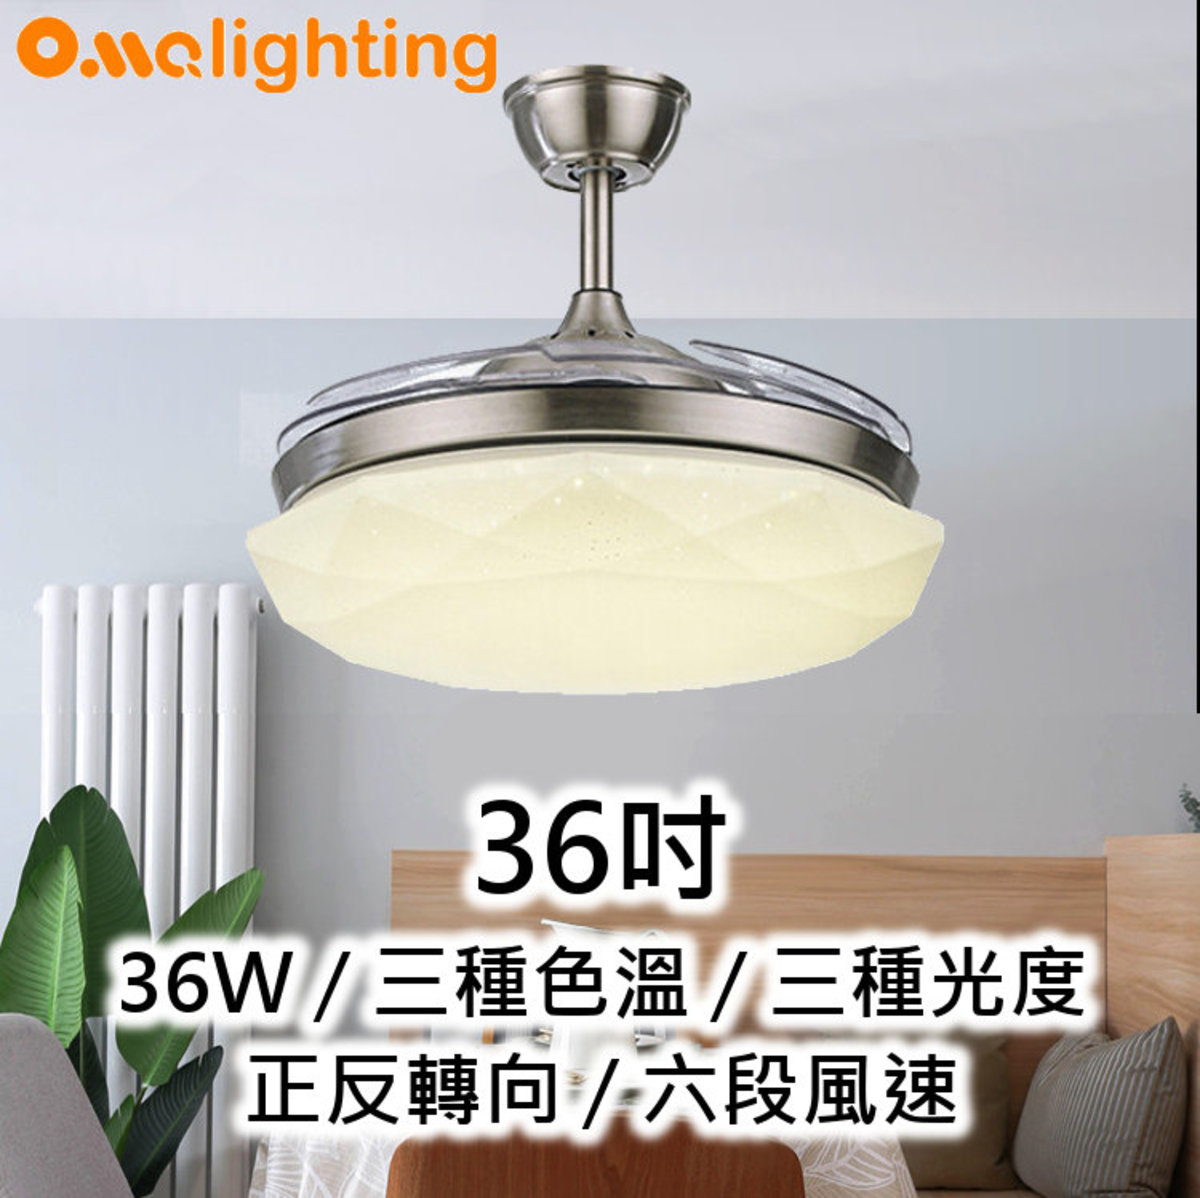 風扇燈36吋 LED36W 3種光度色溫 開合扇葉 吸頂天花燈飾 FAN01-36SV (2926)